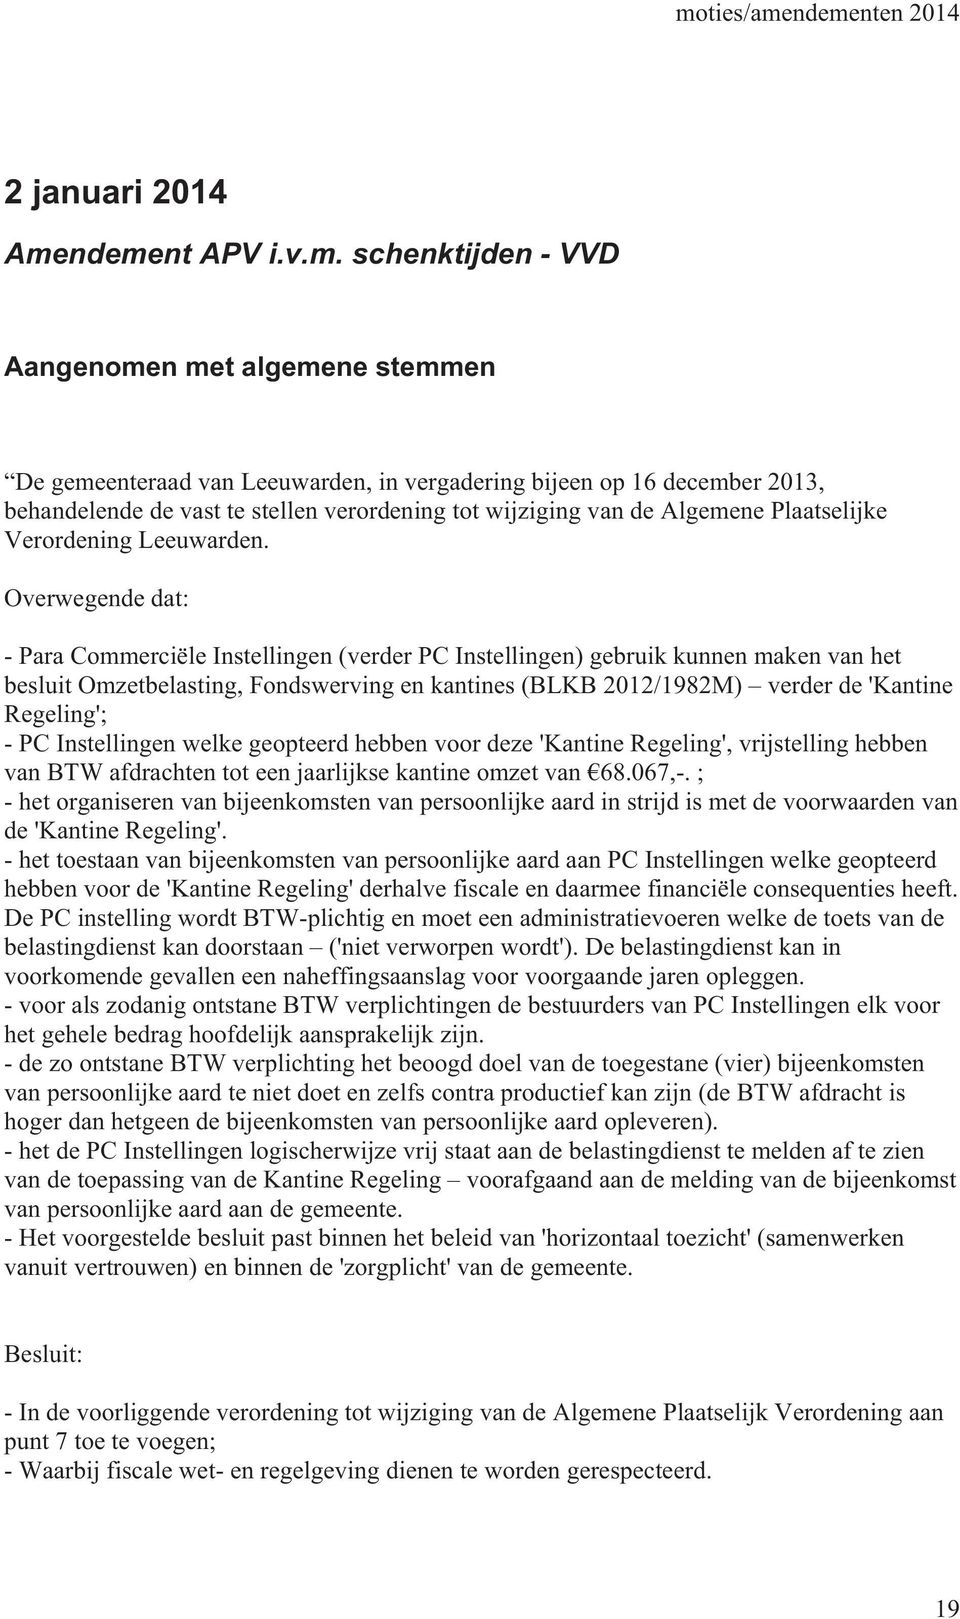 wijziging van de Algemene Plaatselijke Verordening Leeuwarden.